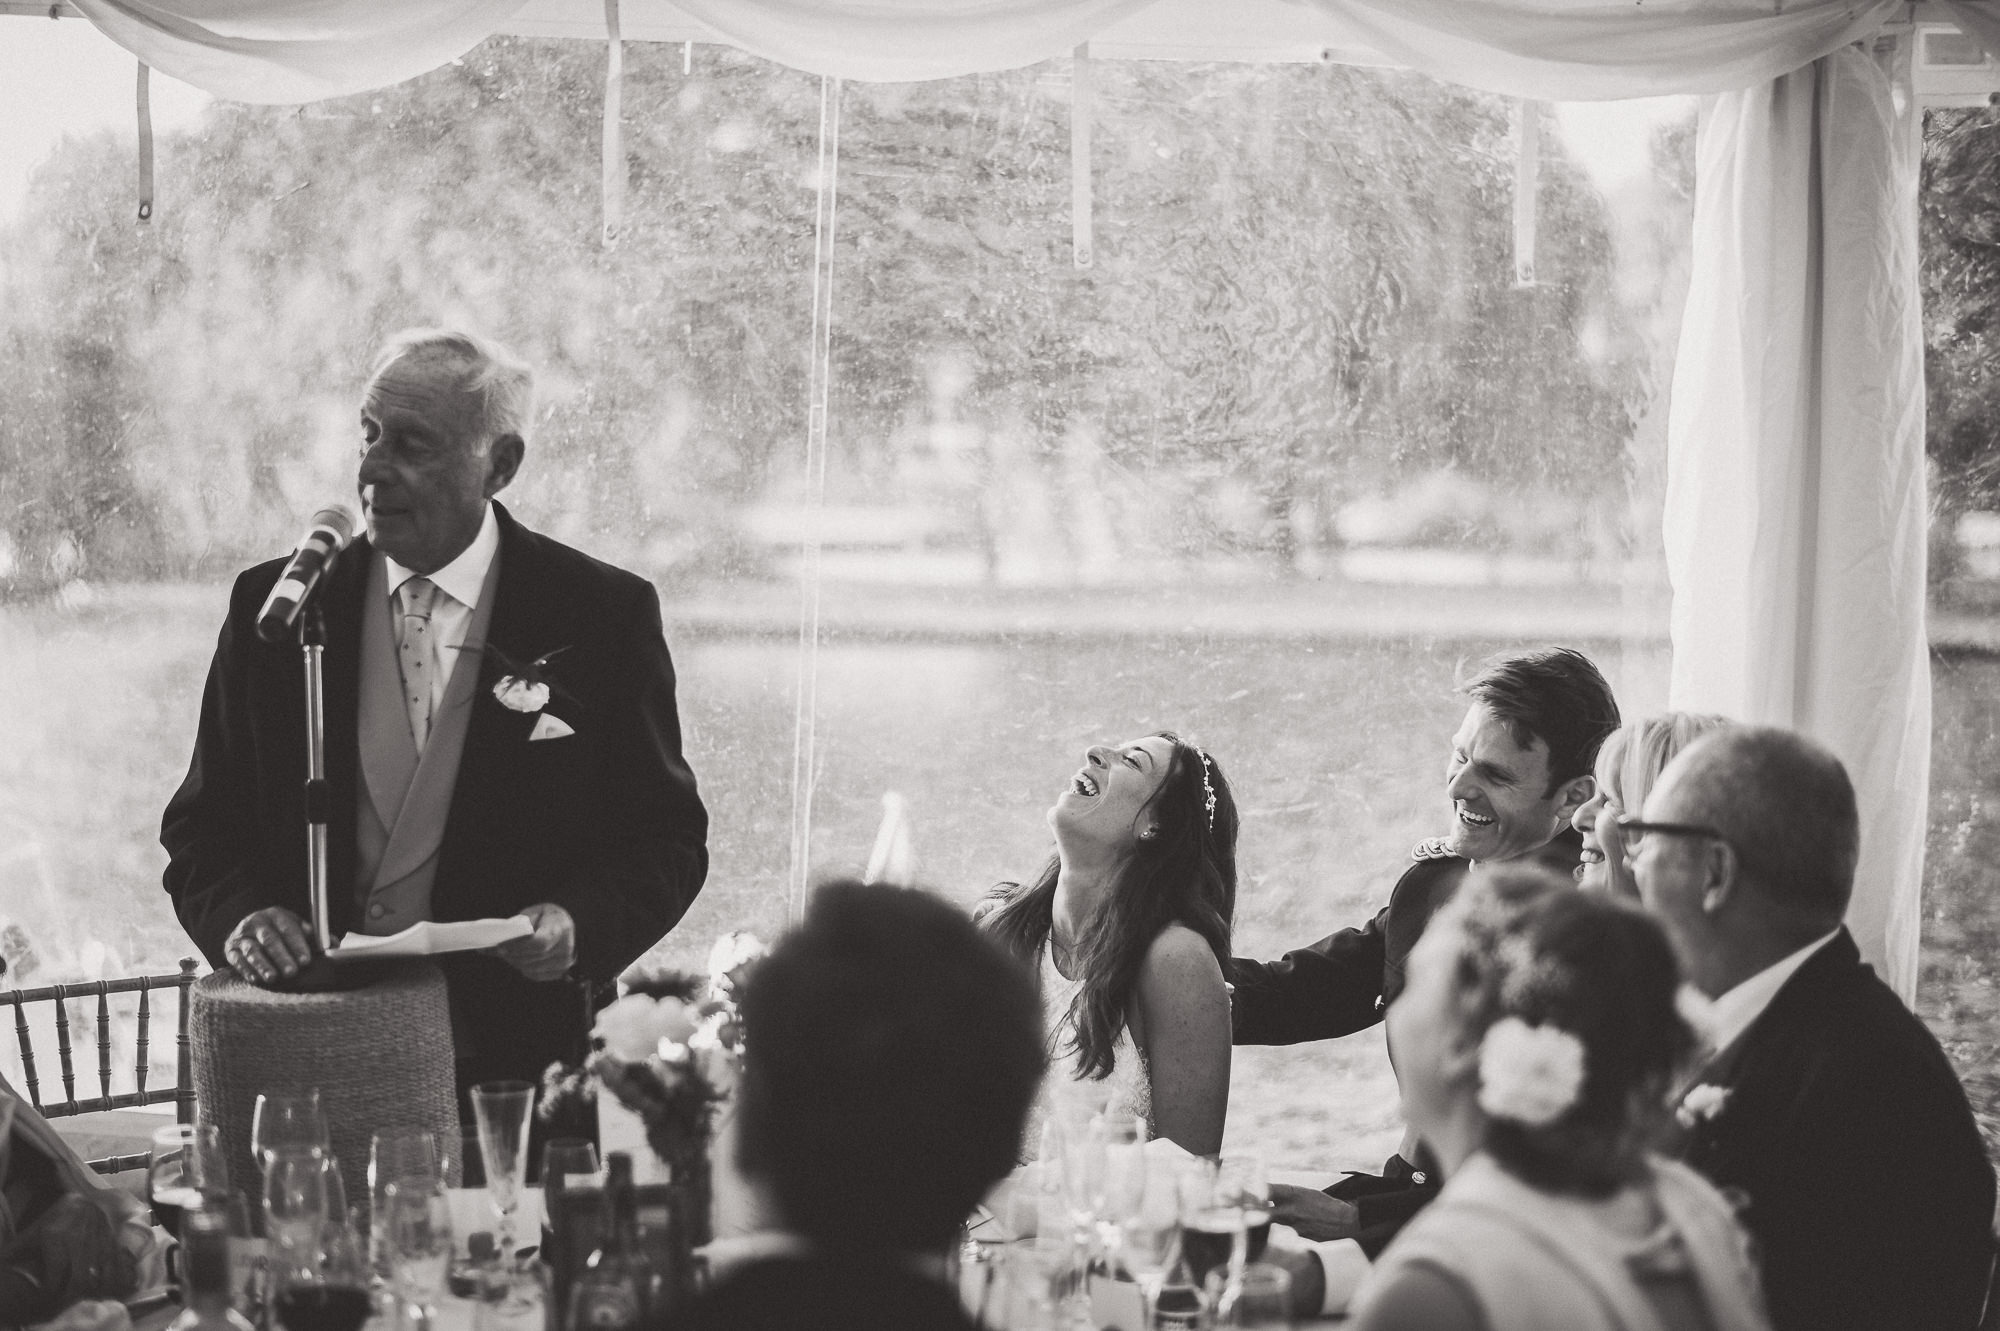 A groom giving a speech at a wedding.